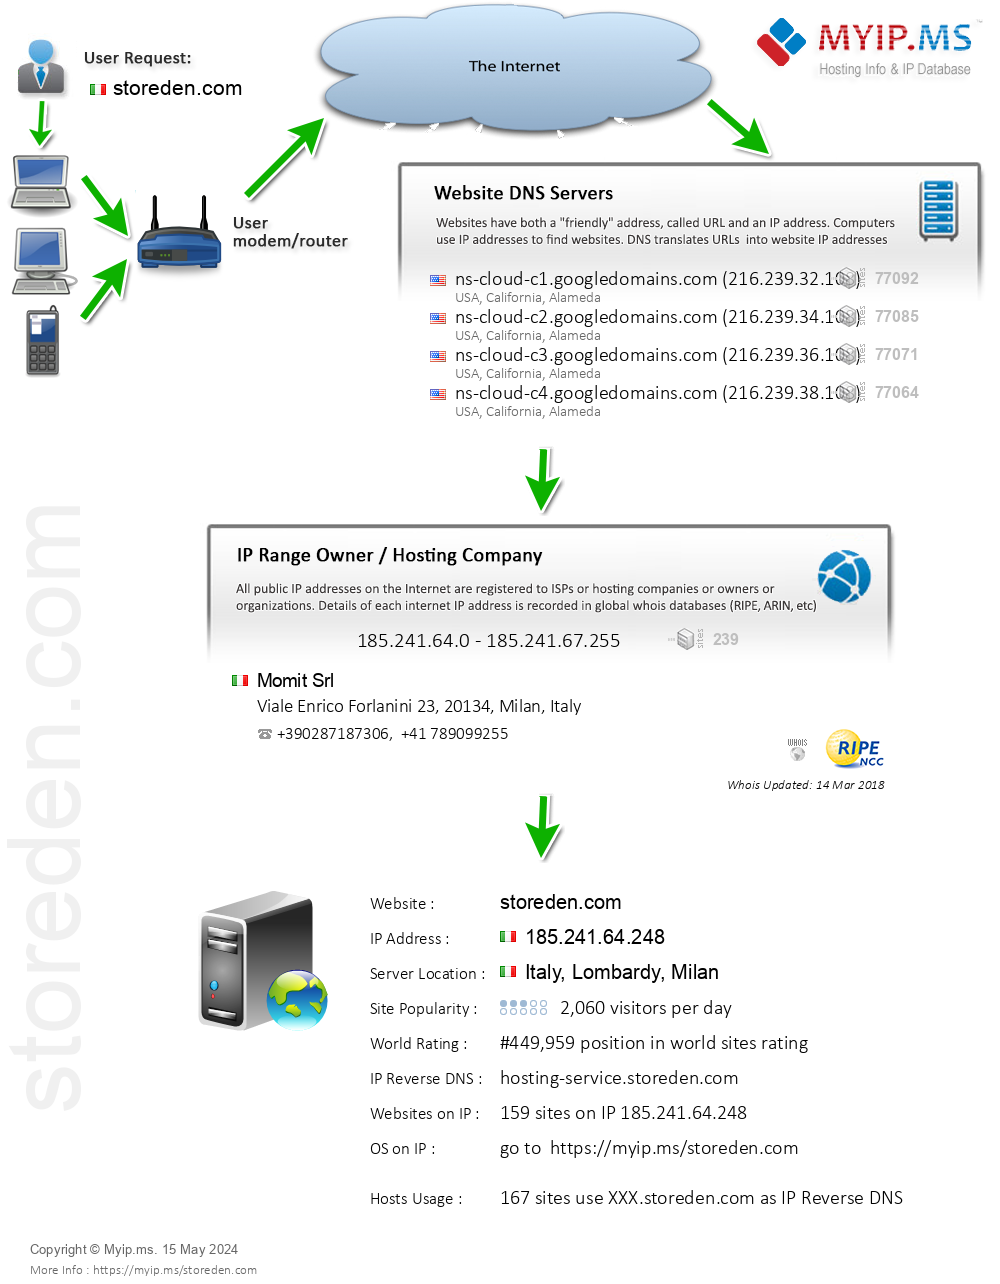 Storeden.com - Website Hosting Visual IP Diagram